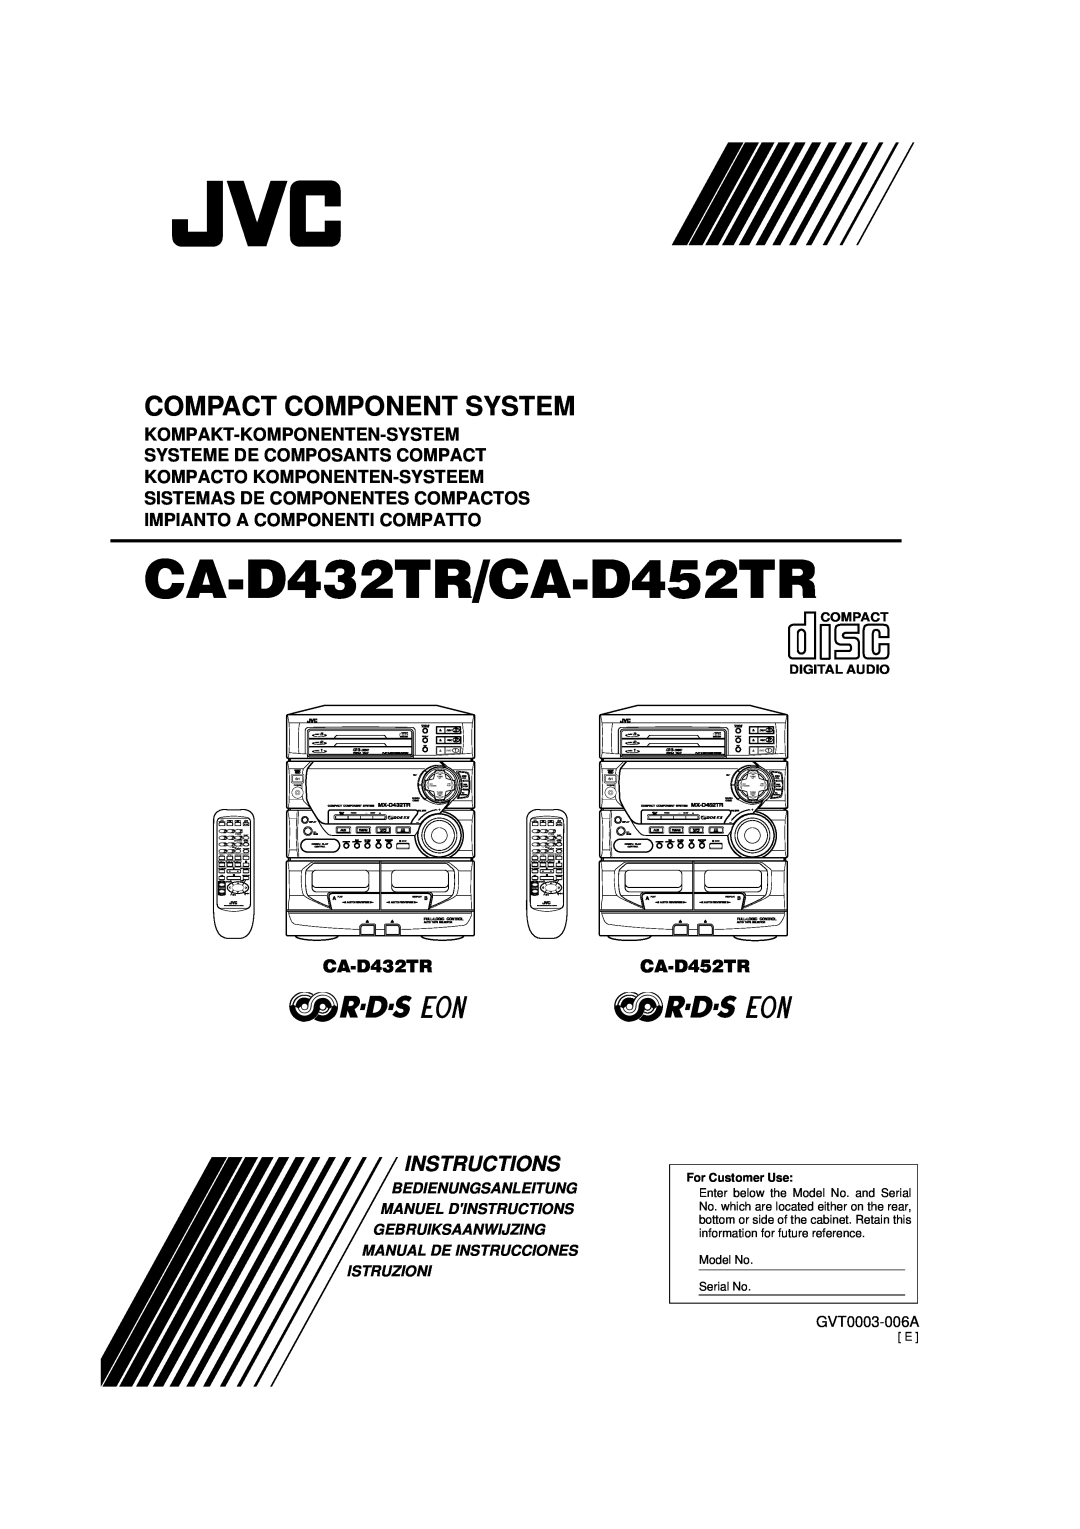 JVC CA-D452TR manual Compact Component System, Kompakt-Komponenten-System, Systeme De Composants Compact, Instructions 